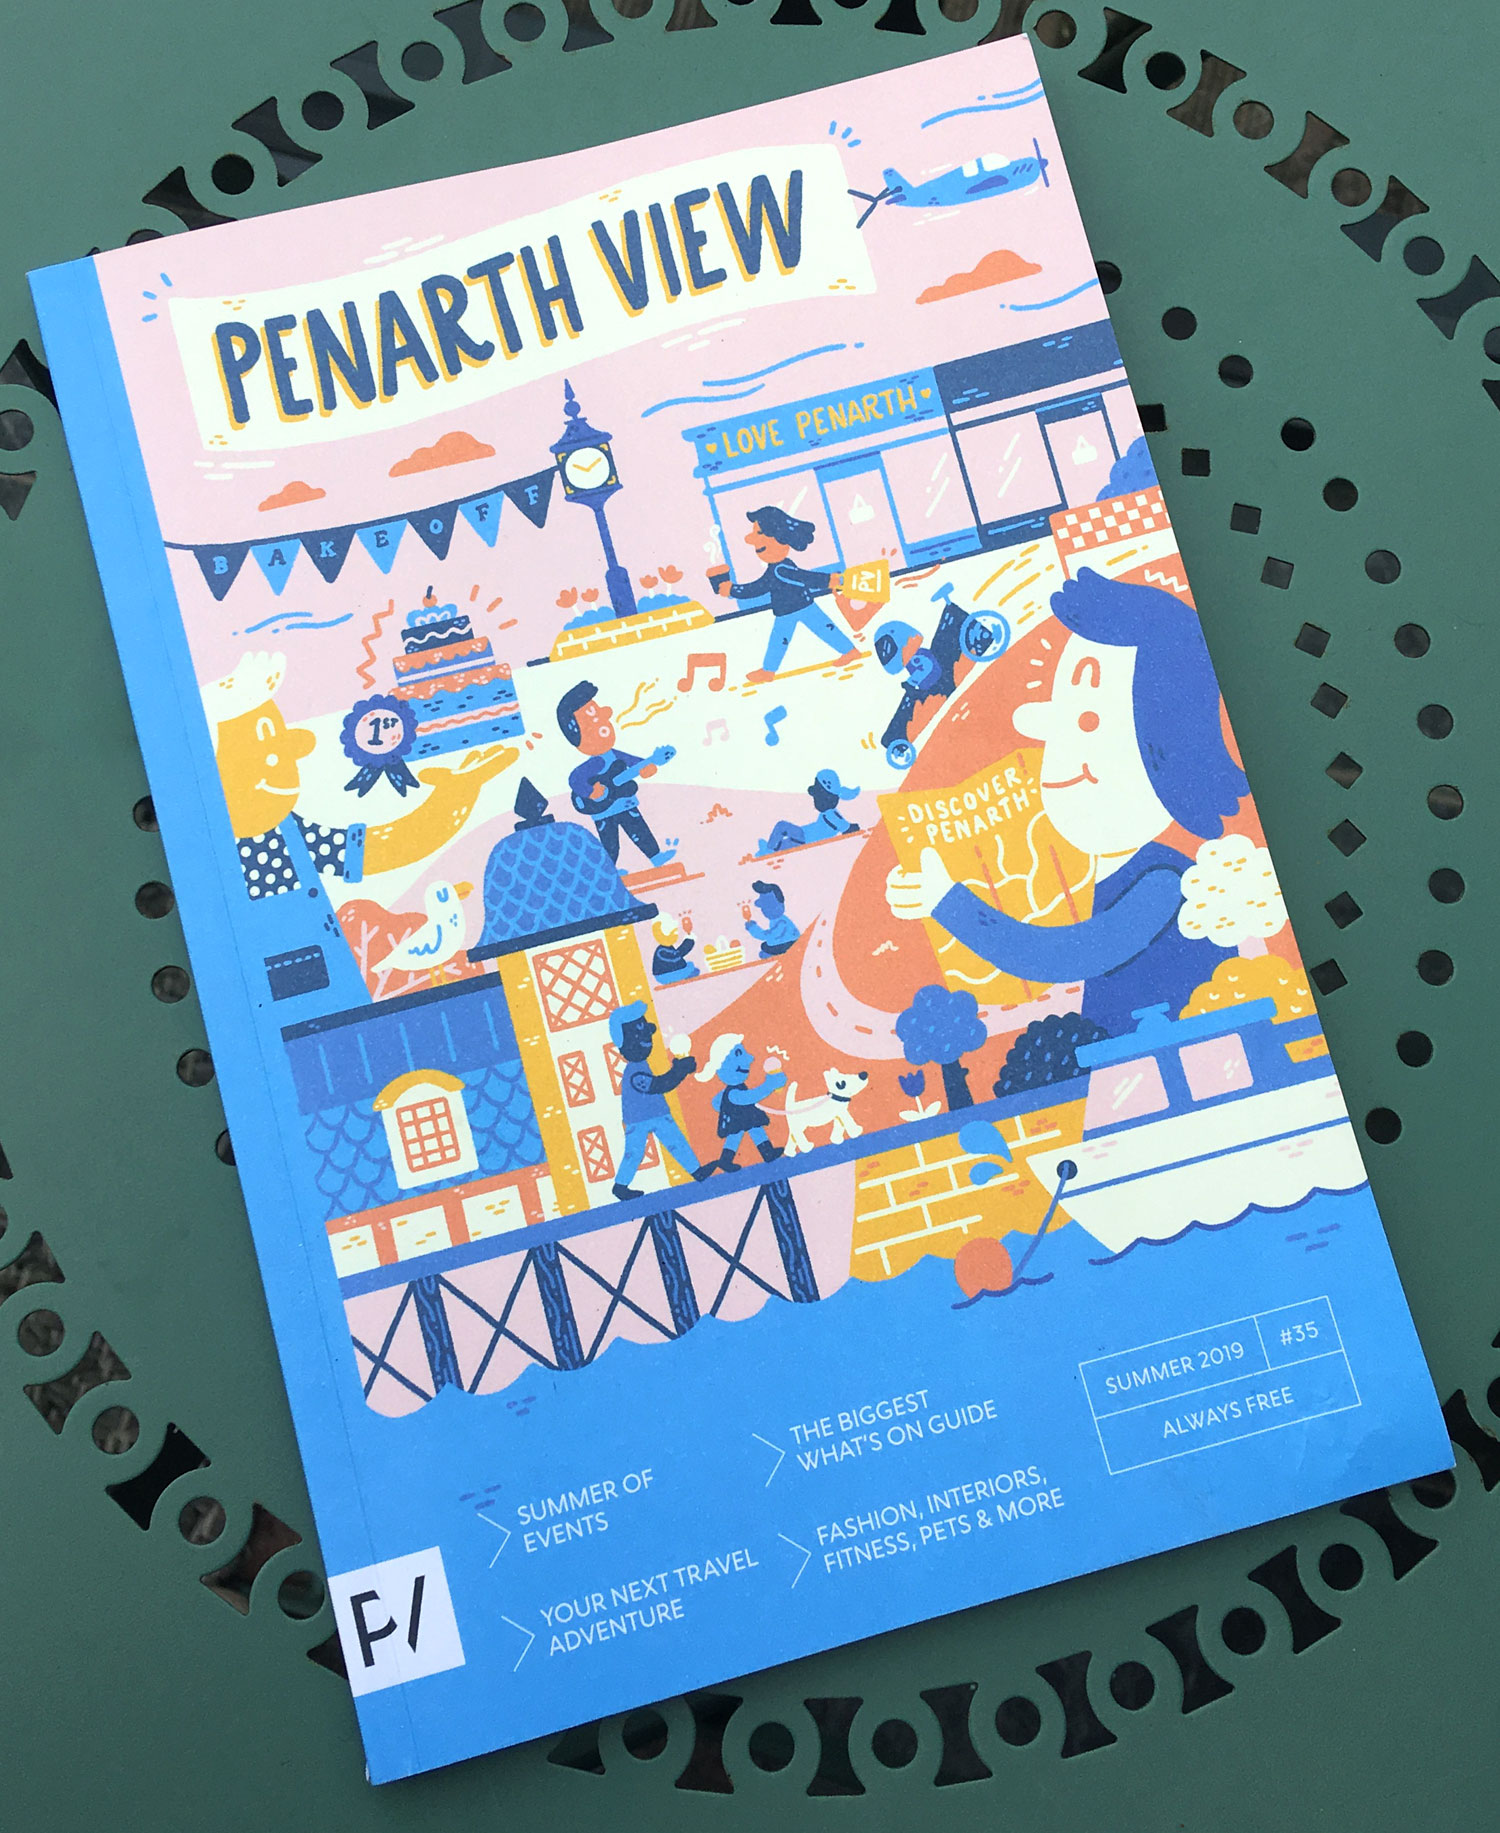 penarth view magazine cover